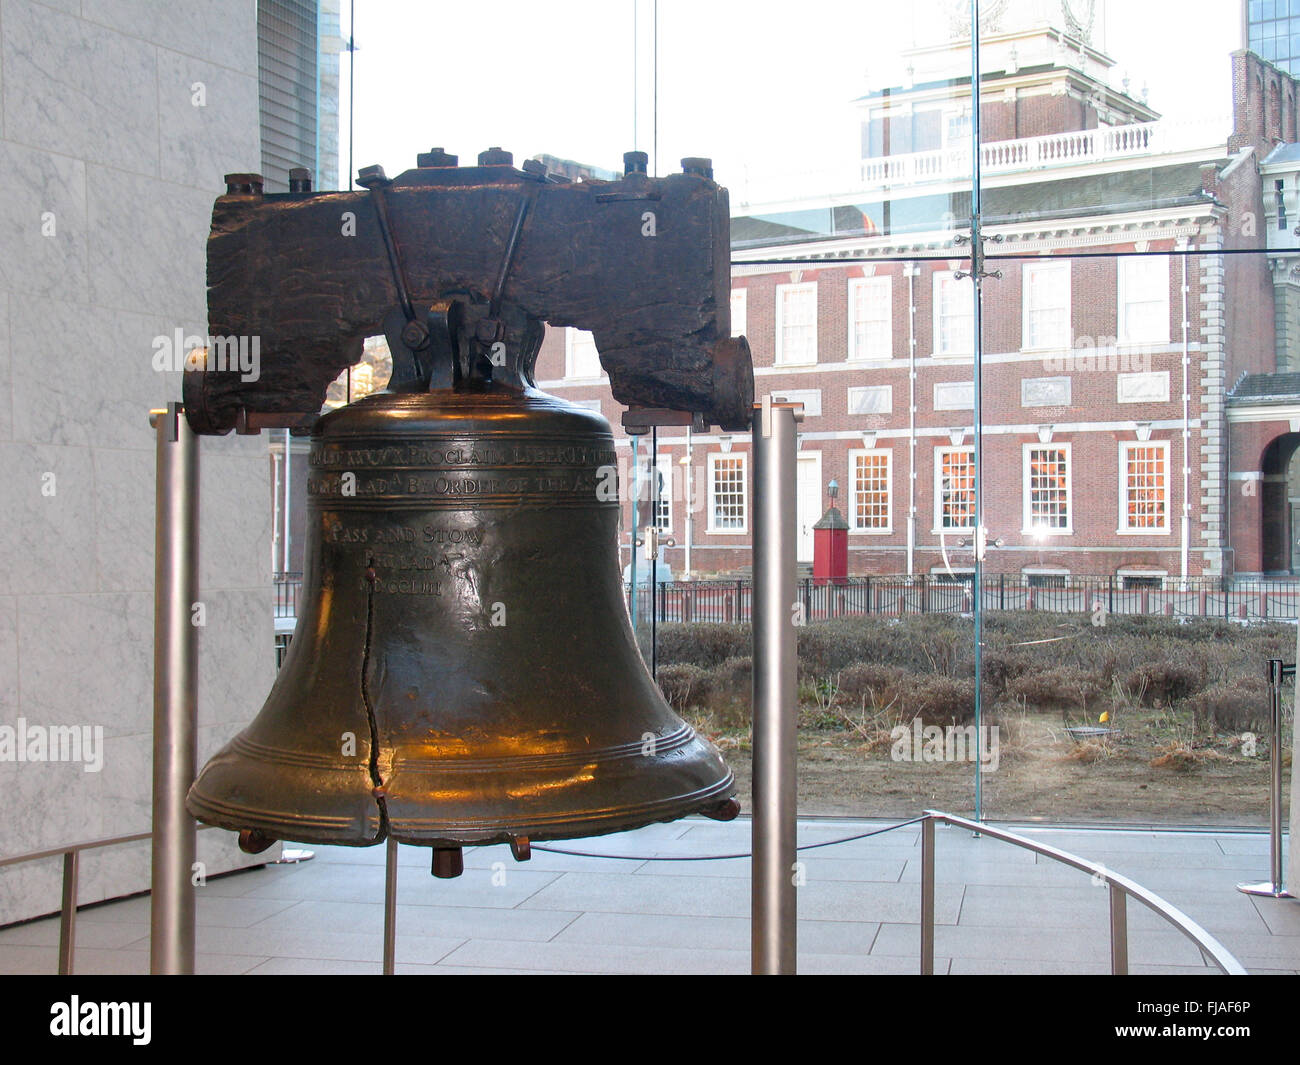 La campana de la libertad, ubicada en el Liberty Bell Center, Philadelphia. Foto de stock